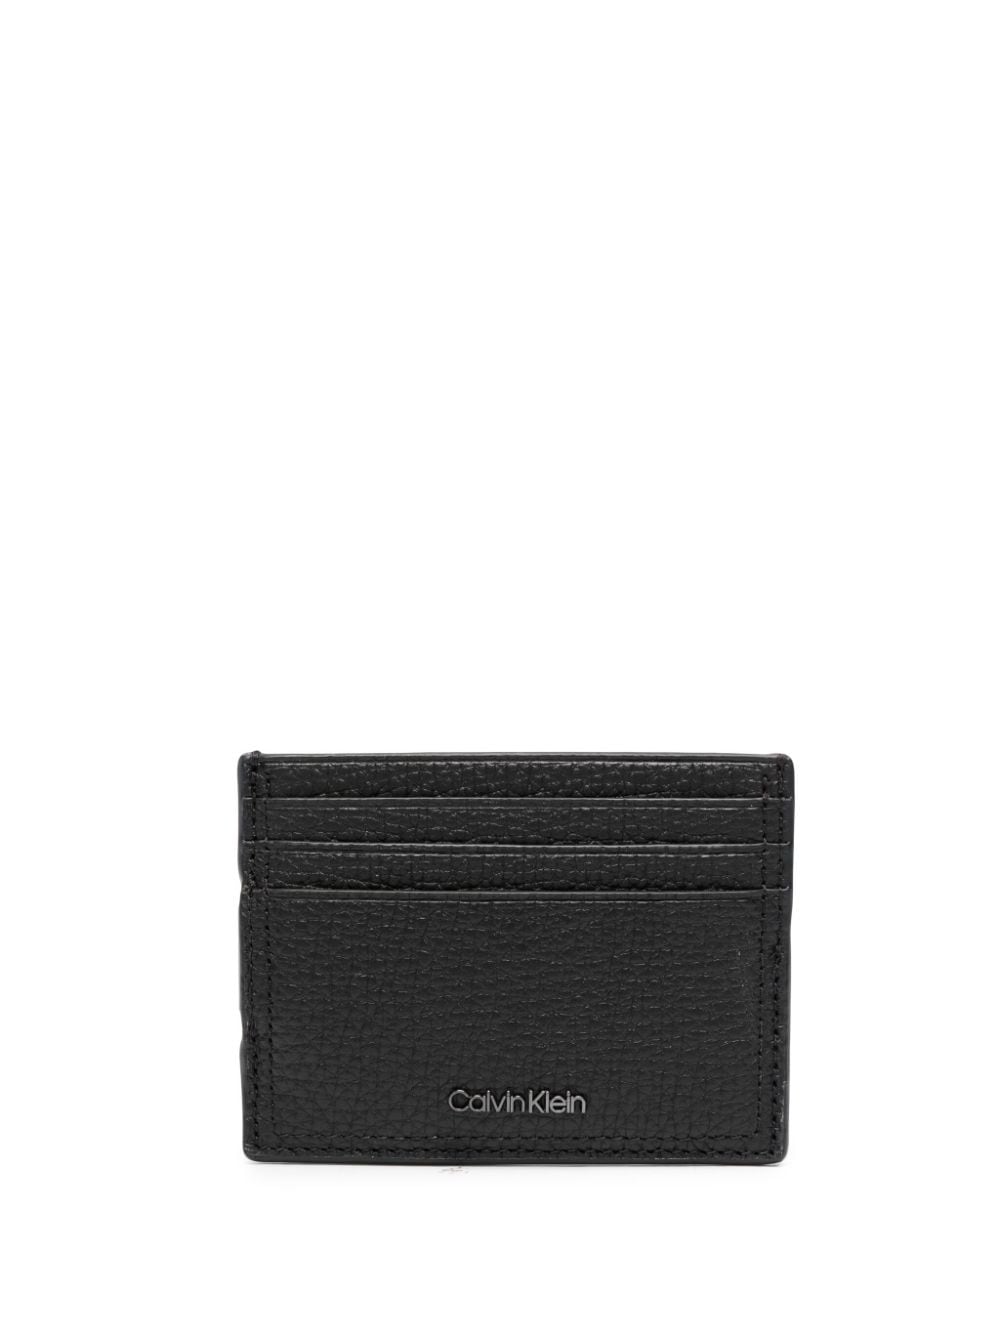 Calvin Klein Minimalism leather cardholder - Black von Calvin Klein